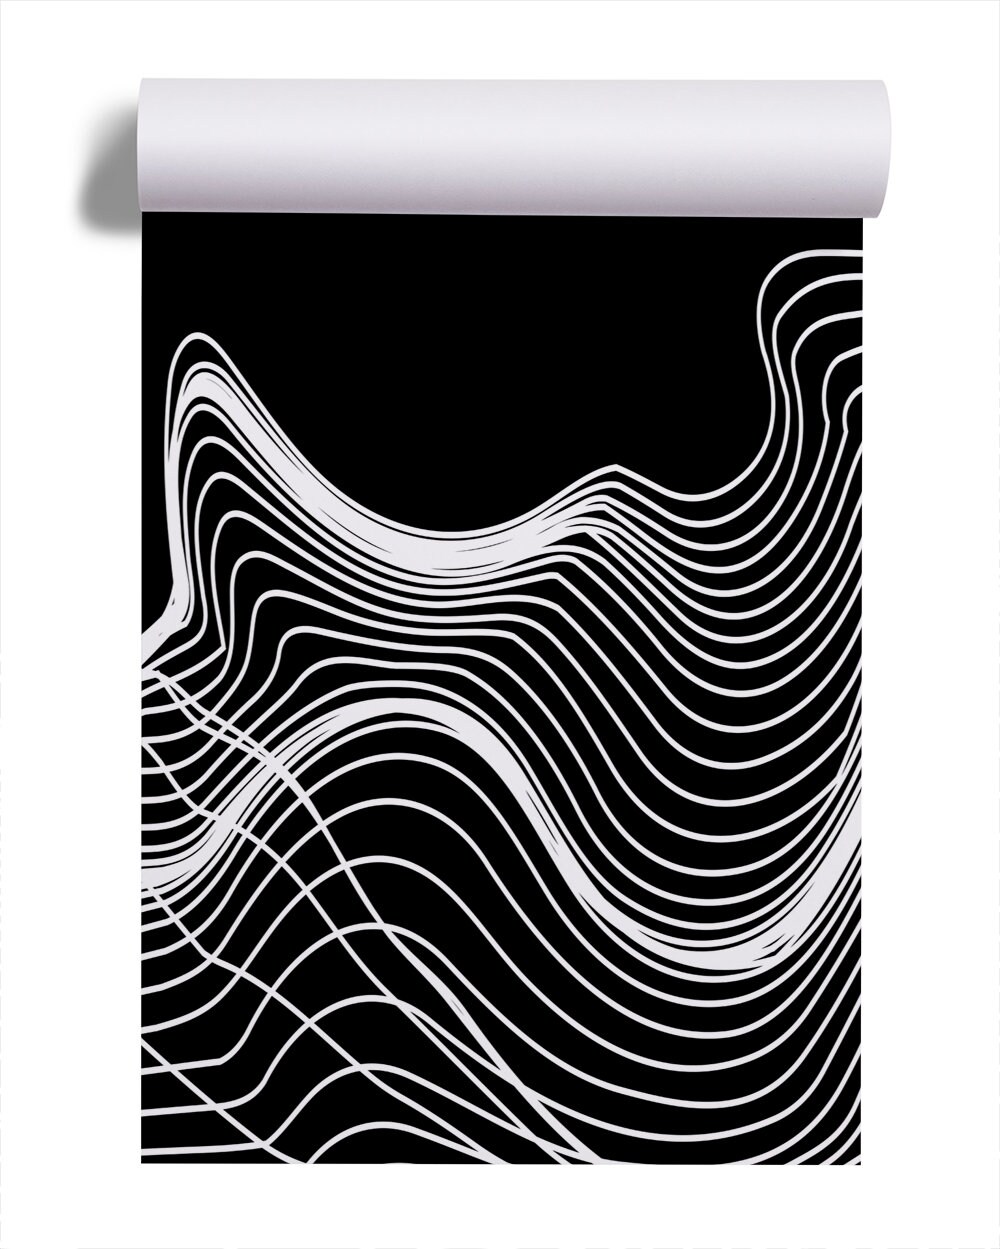 Off-White wallpaper - Dark Version by 4ureli1 on DeviantArt